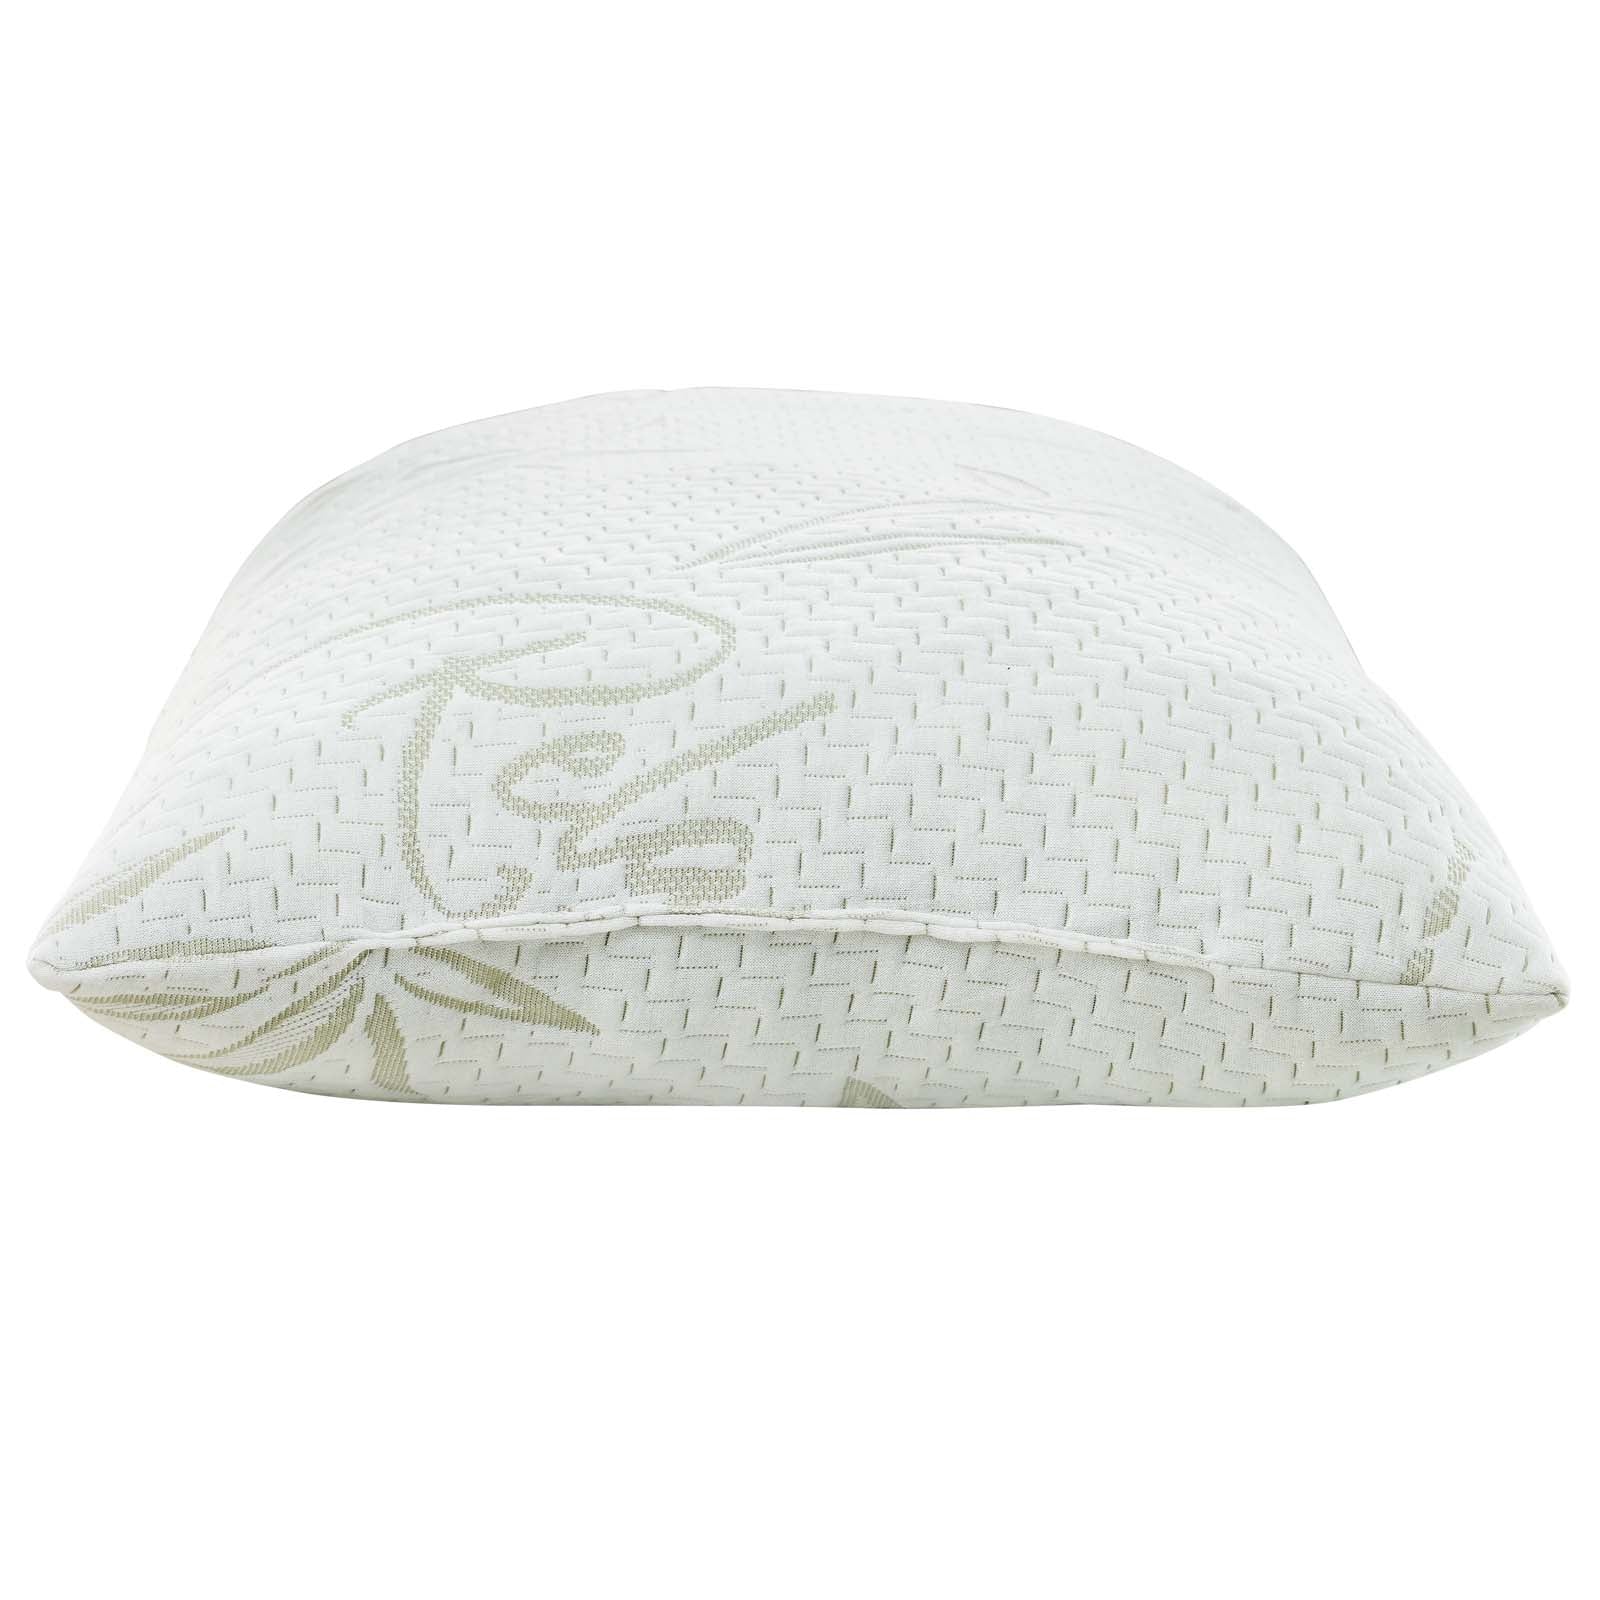 Modway Pillows - Relax King Pillow White